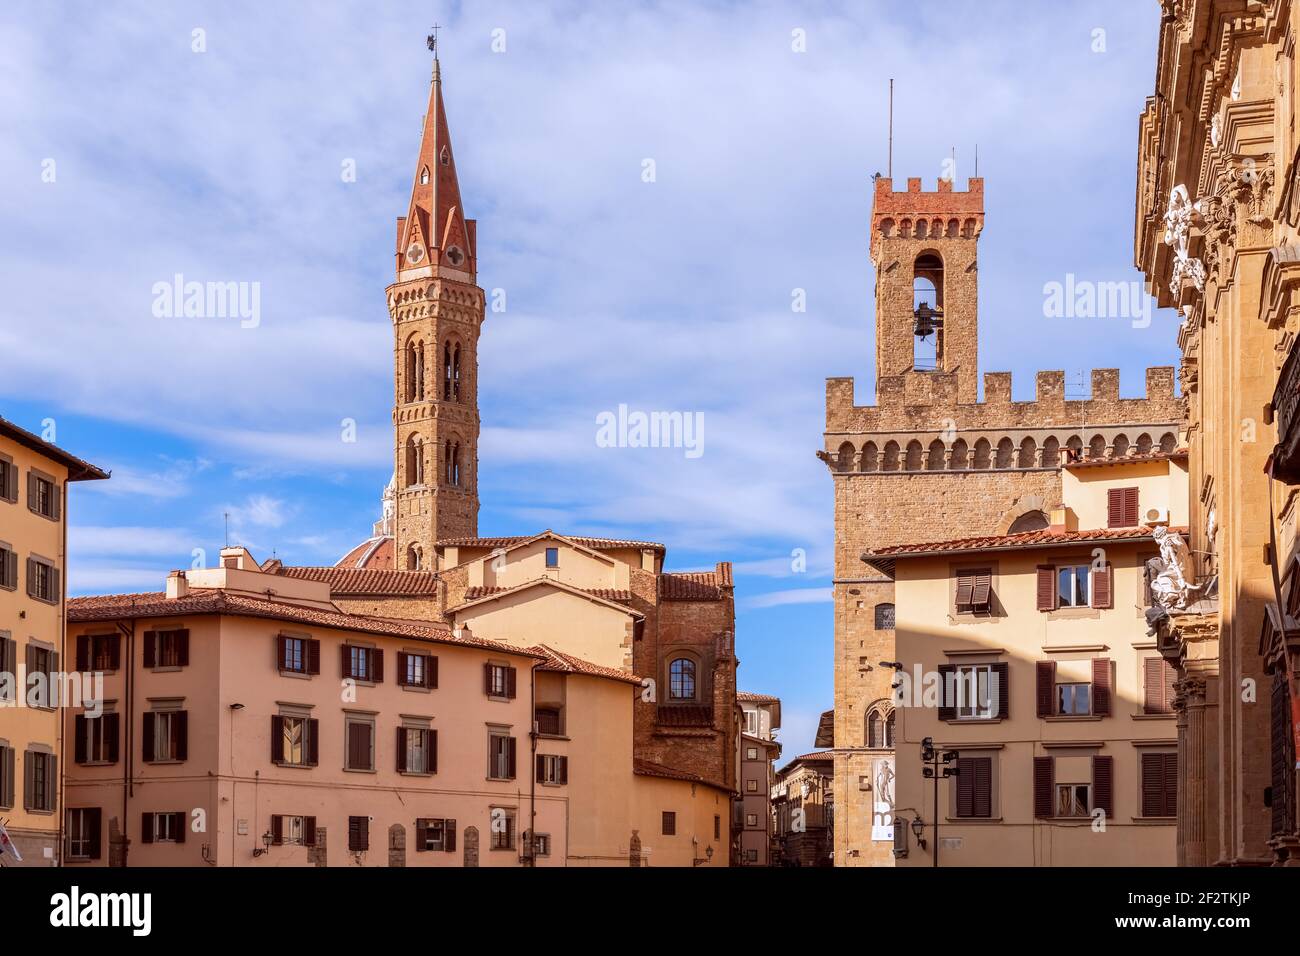 Mittelalterlicher Platz (Piazza di San Firenze) mit Glockentürmen im historischen Zentrum von Florenz, Italien Stockfoto